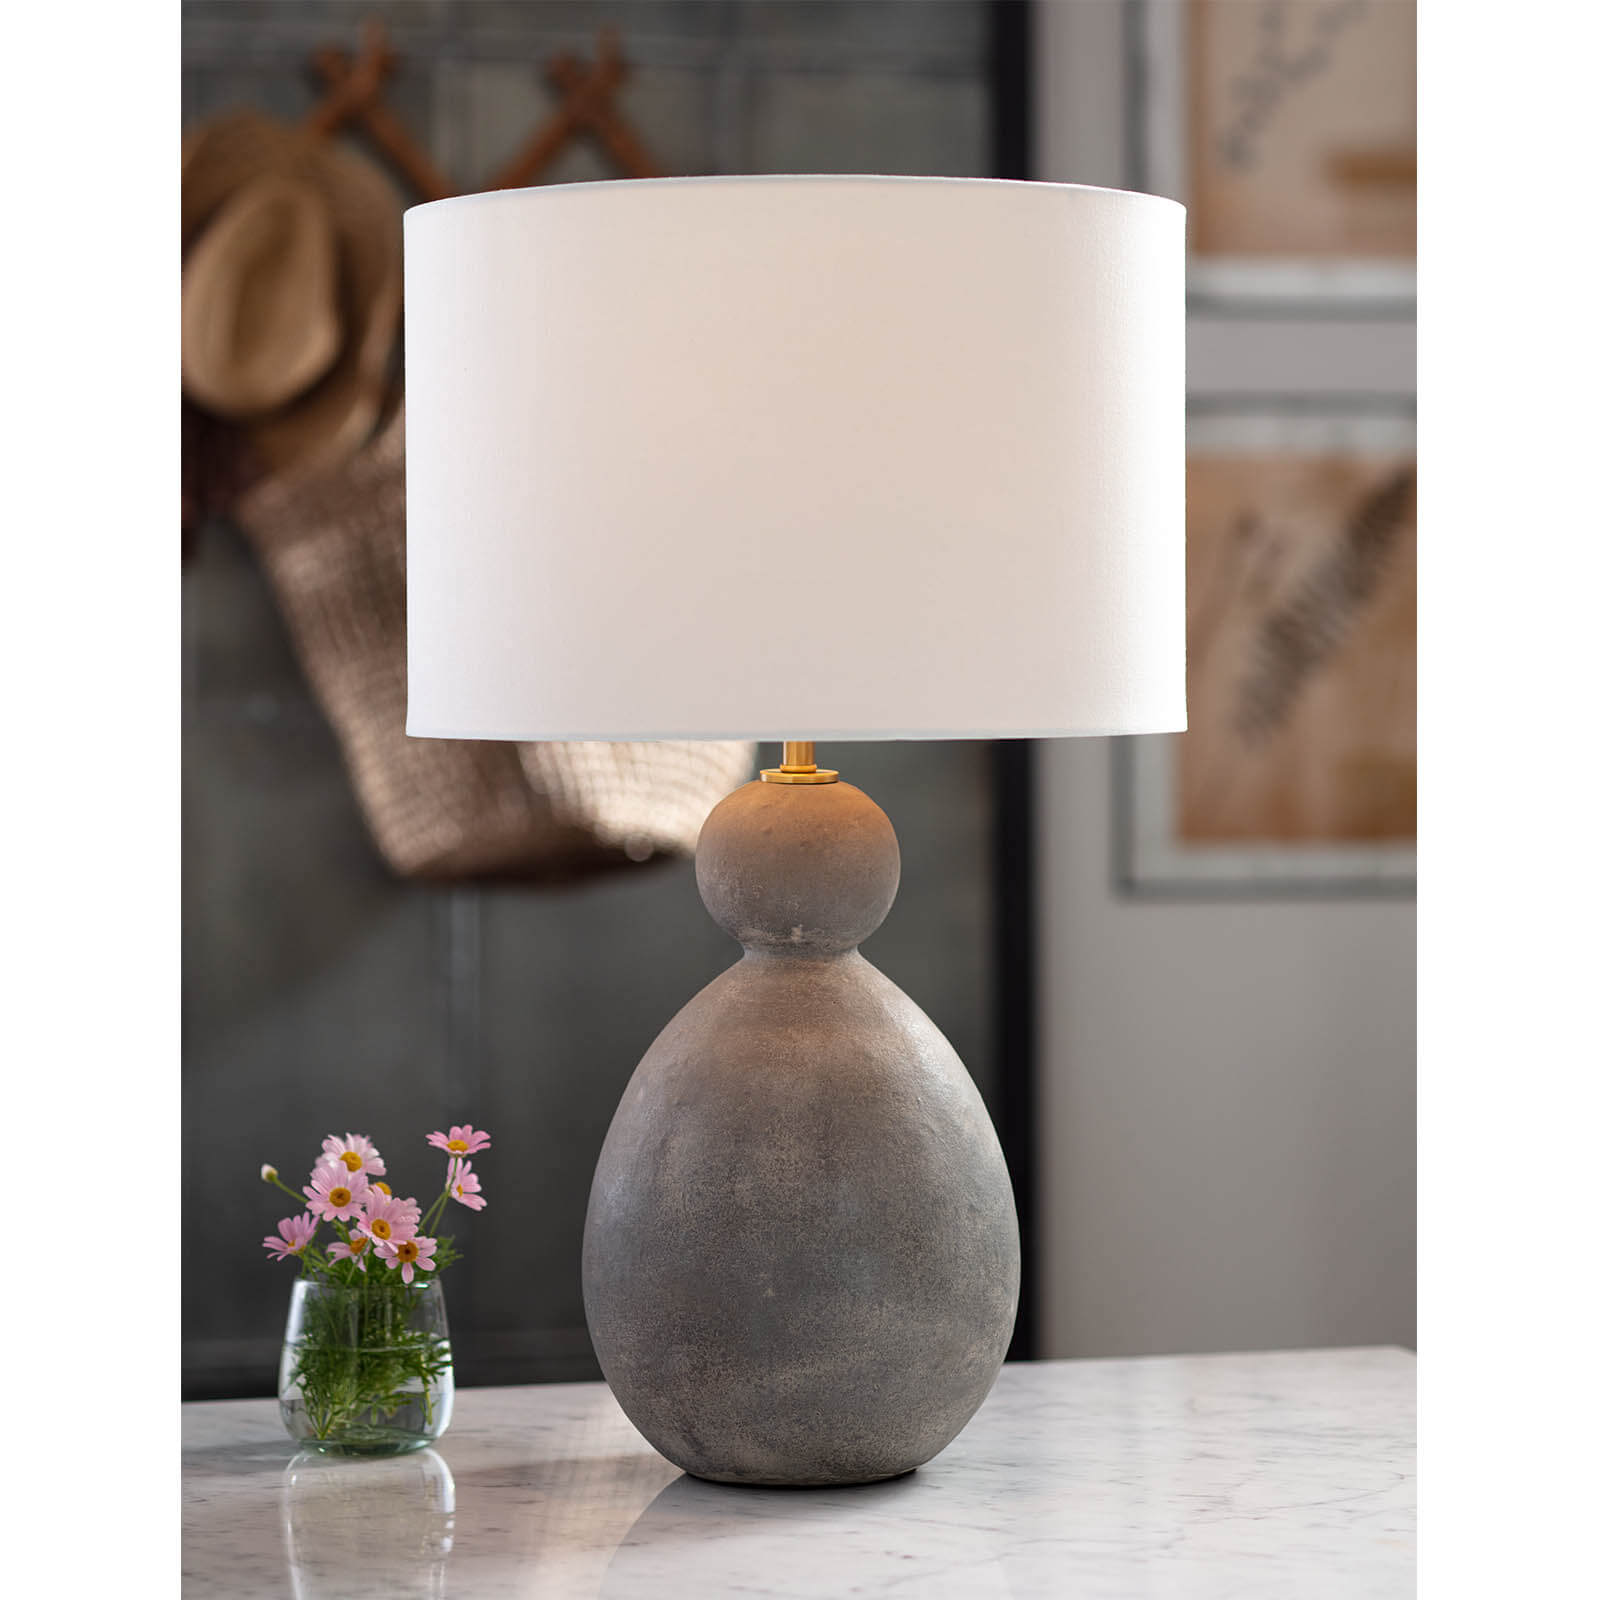 Regina Andrew, Playa Ceramic Table Lamp